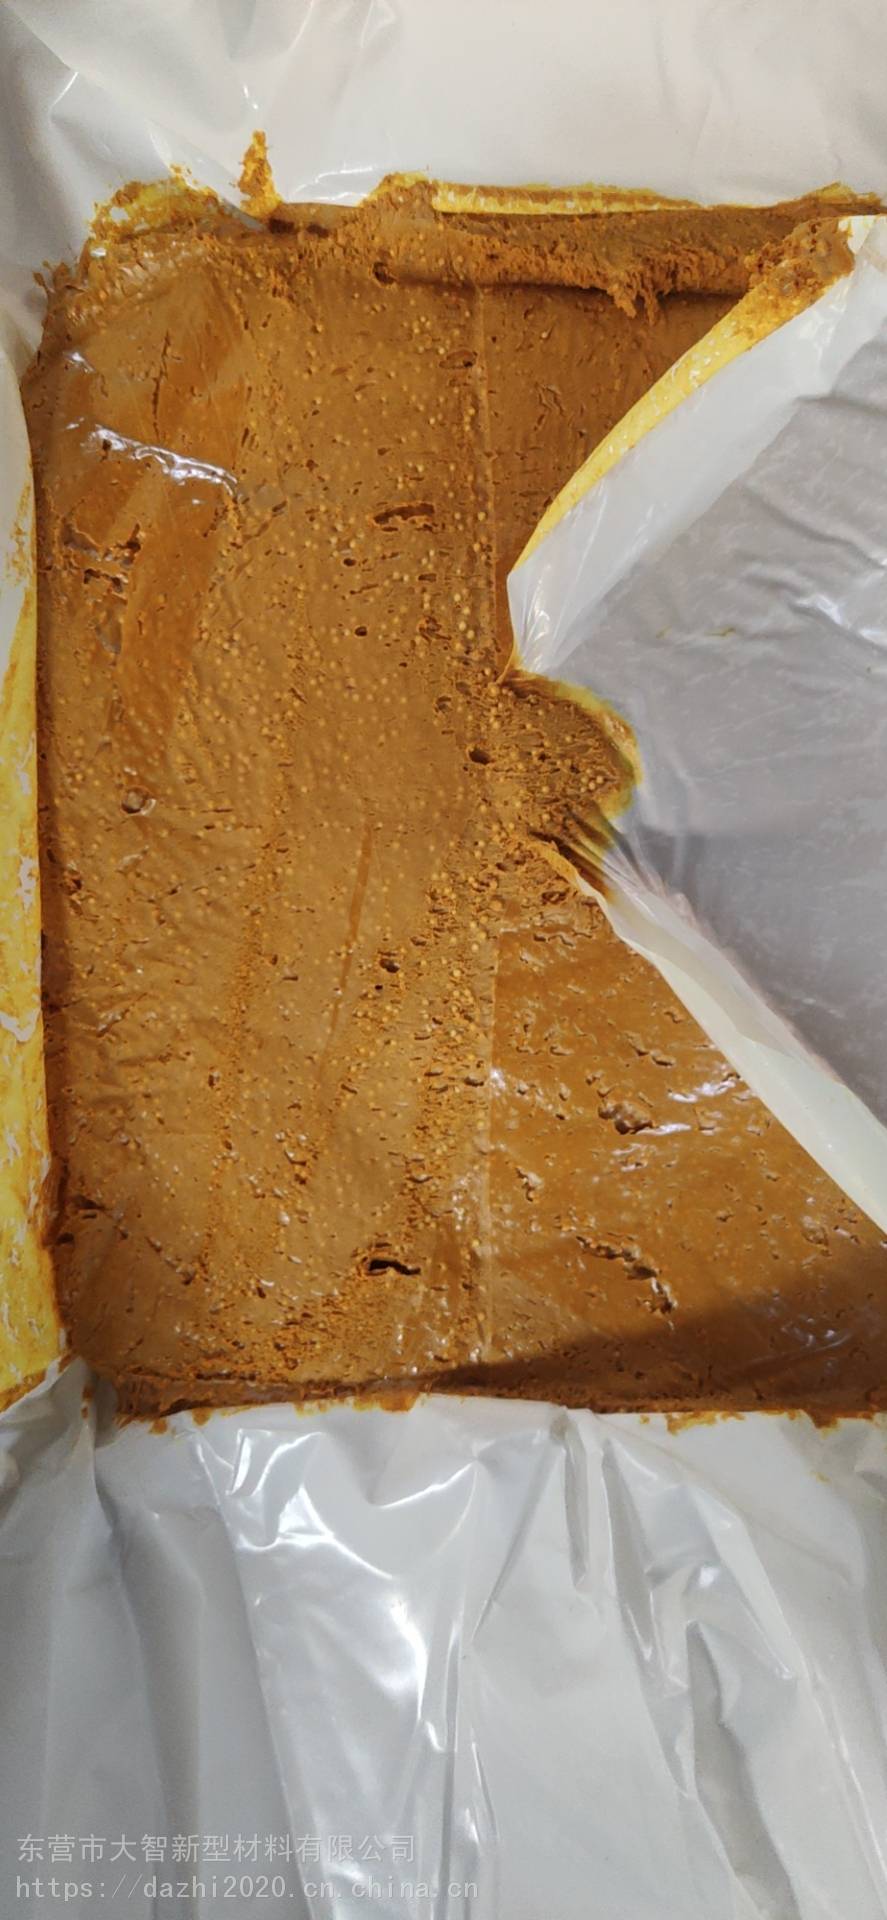 PetroGuard海洋矿脂防腐膏矿脂底漆生产